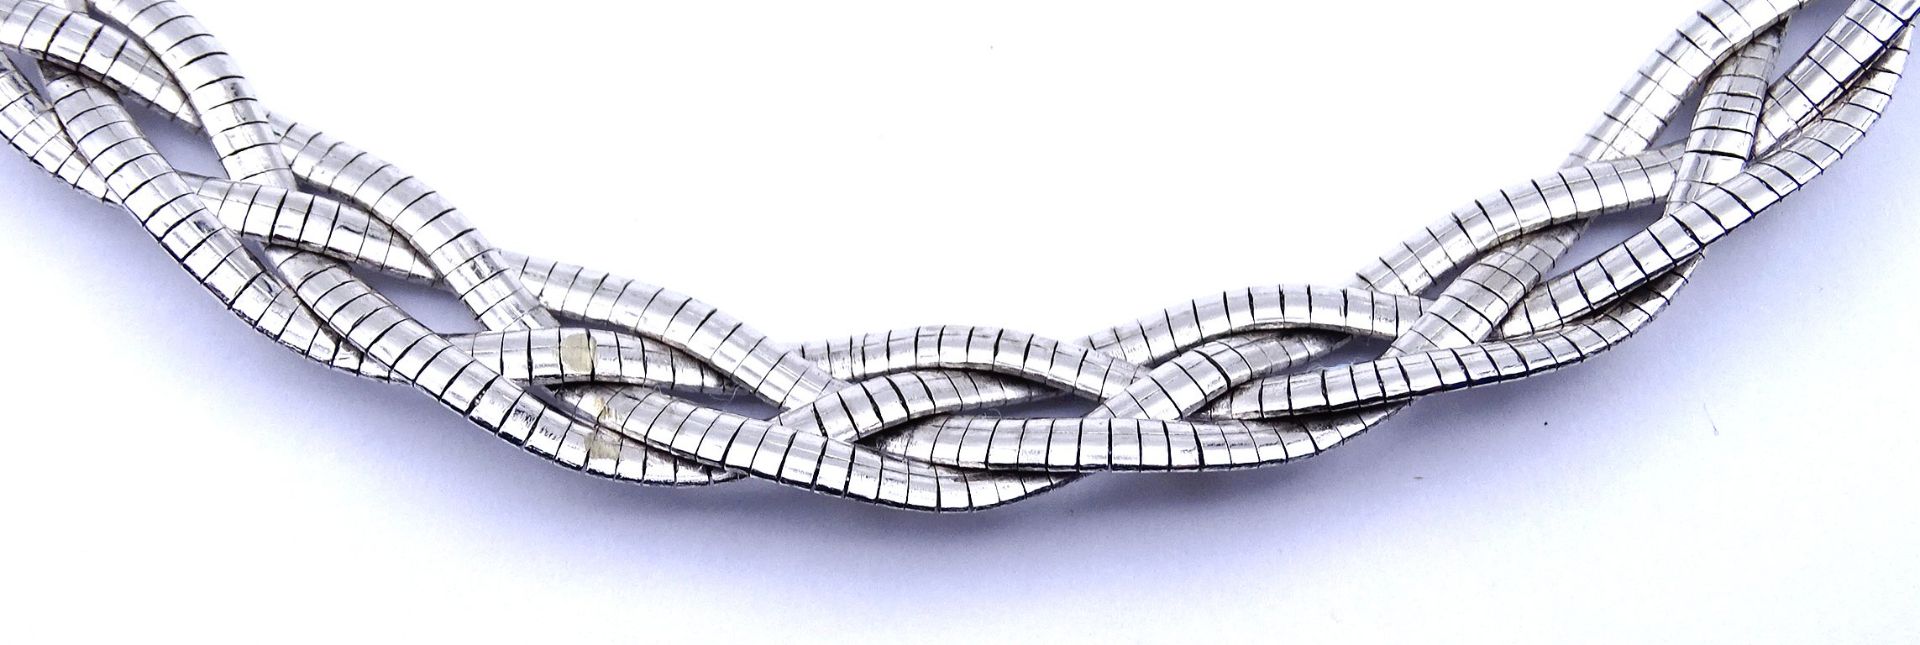 Halskette, Silber 835/000, L. 44cm, B. 14mm, 68,9g. - Image 8 of 8